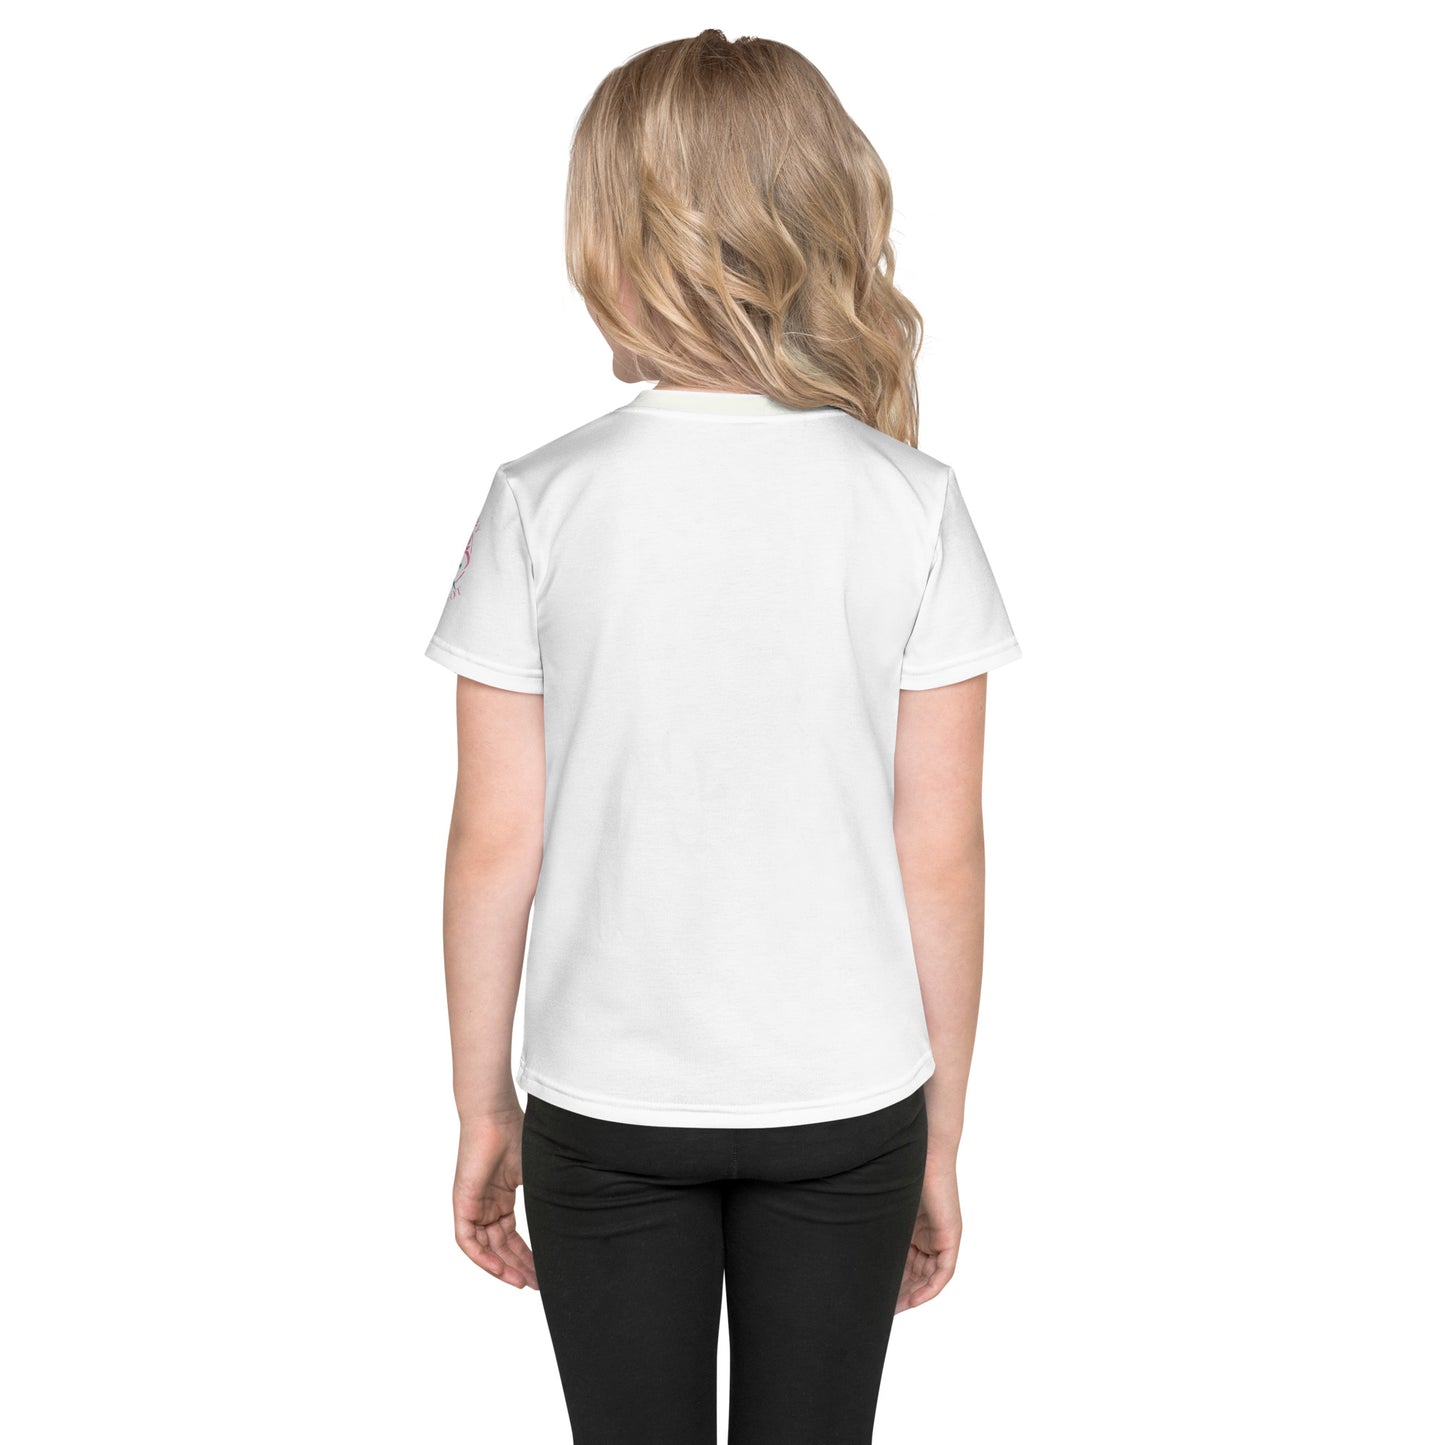 "Axis blir lugn" T-shirt för barn 2-8år, med helt tryck på framsidan samt rundad hals, vit rygg och ärm.